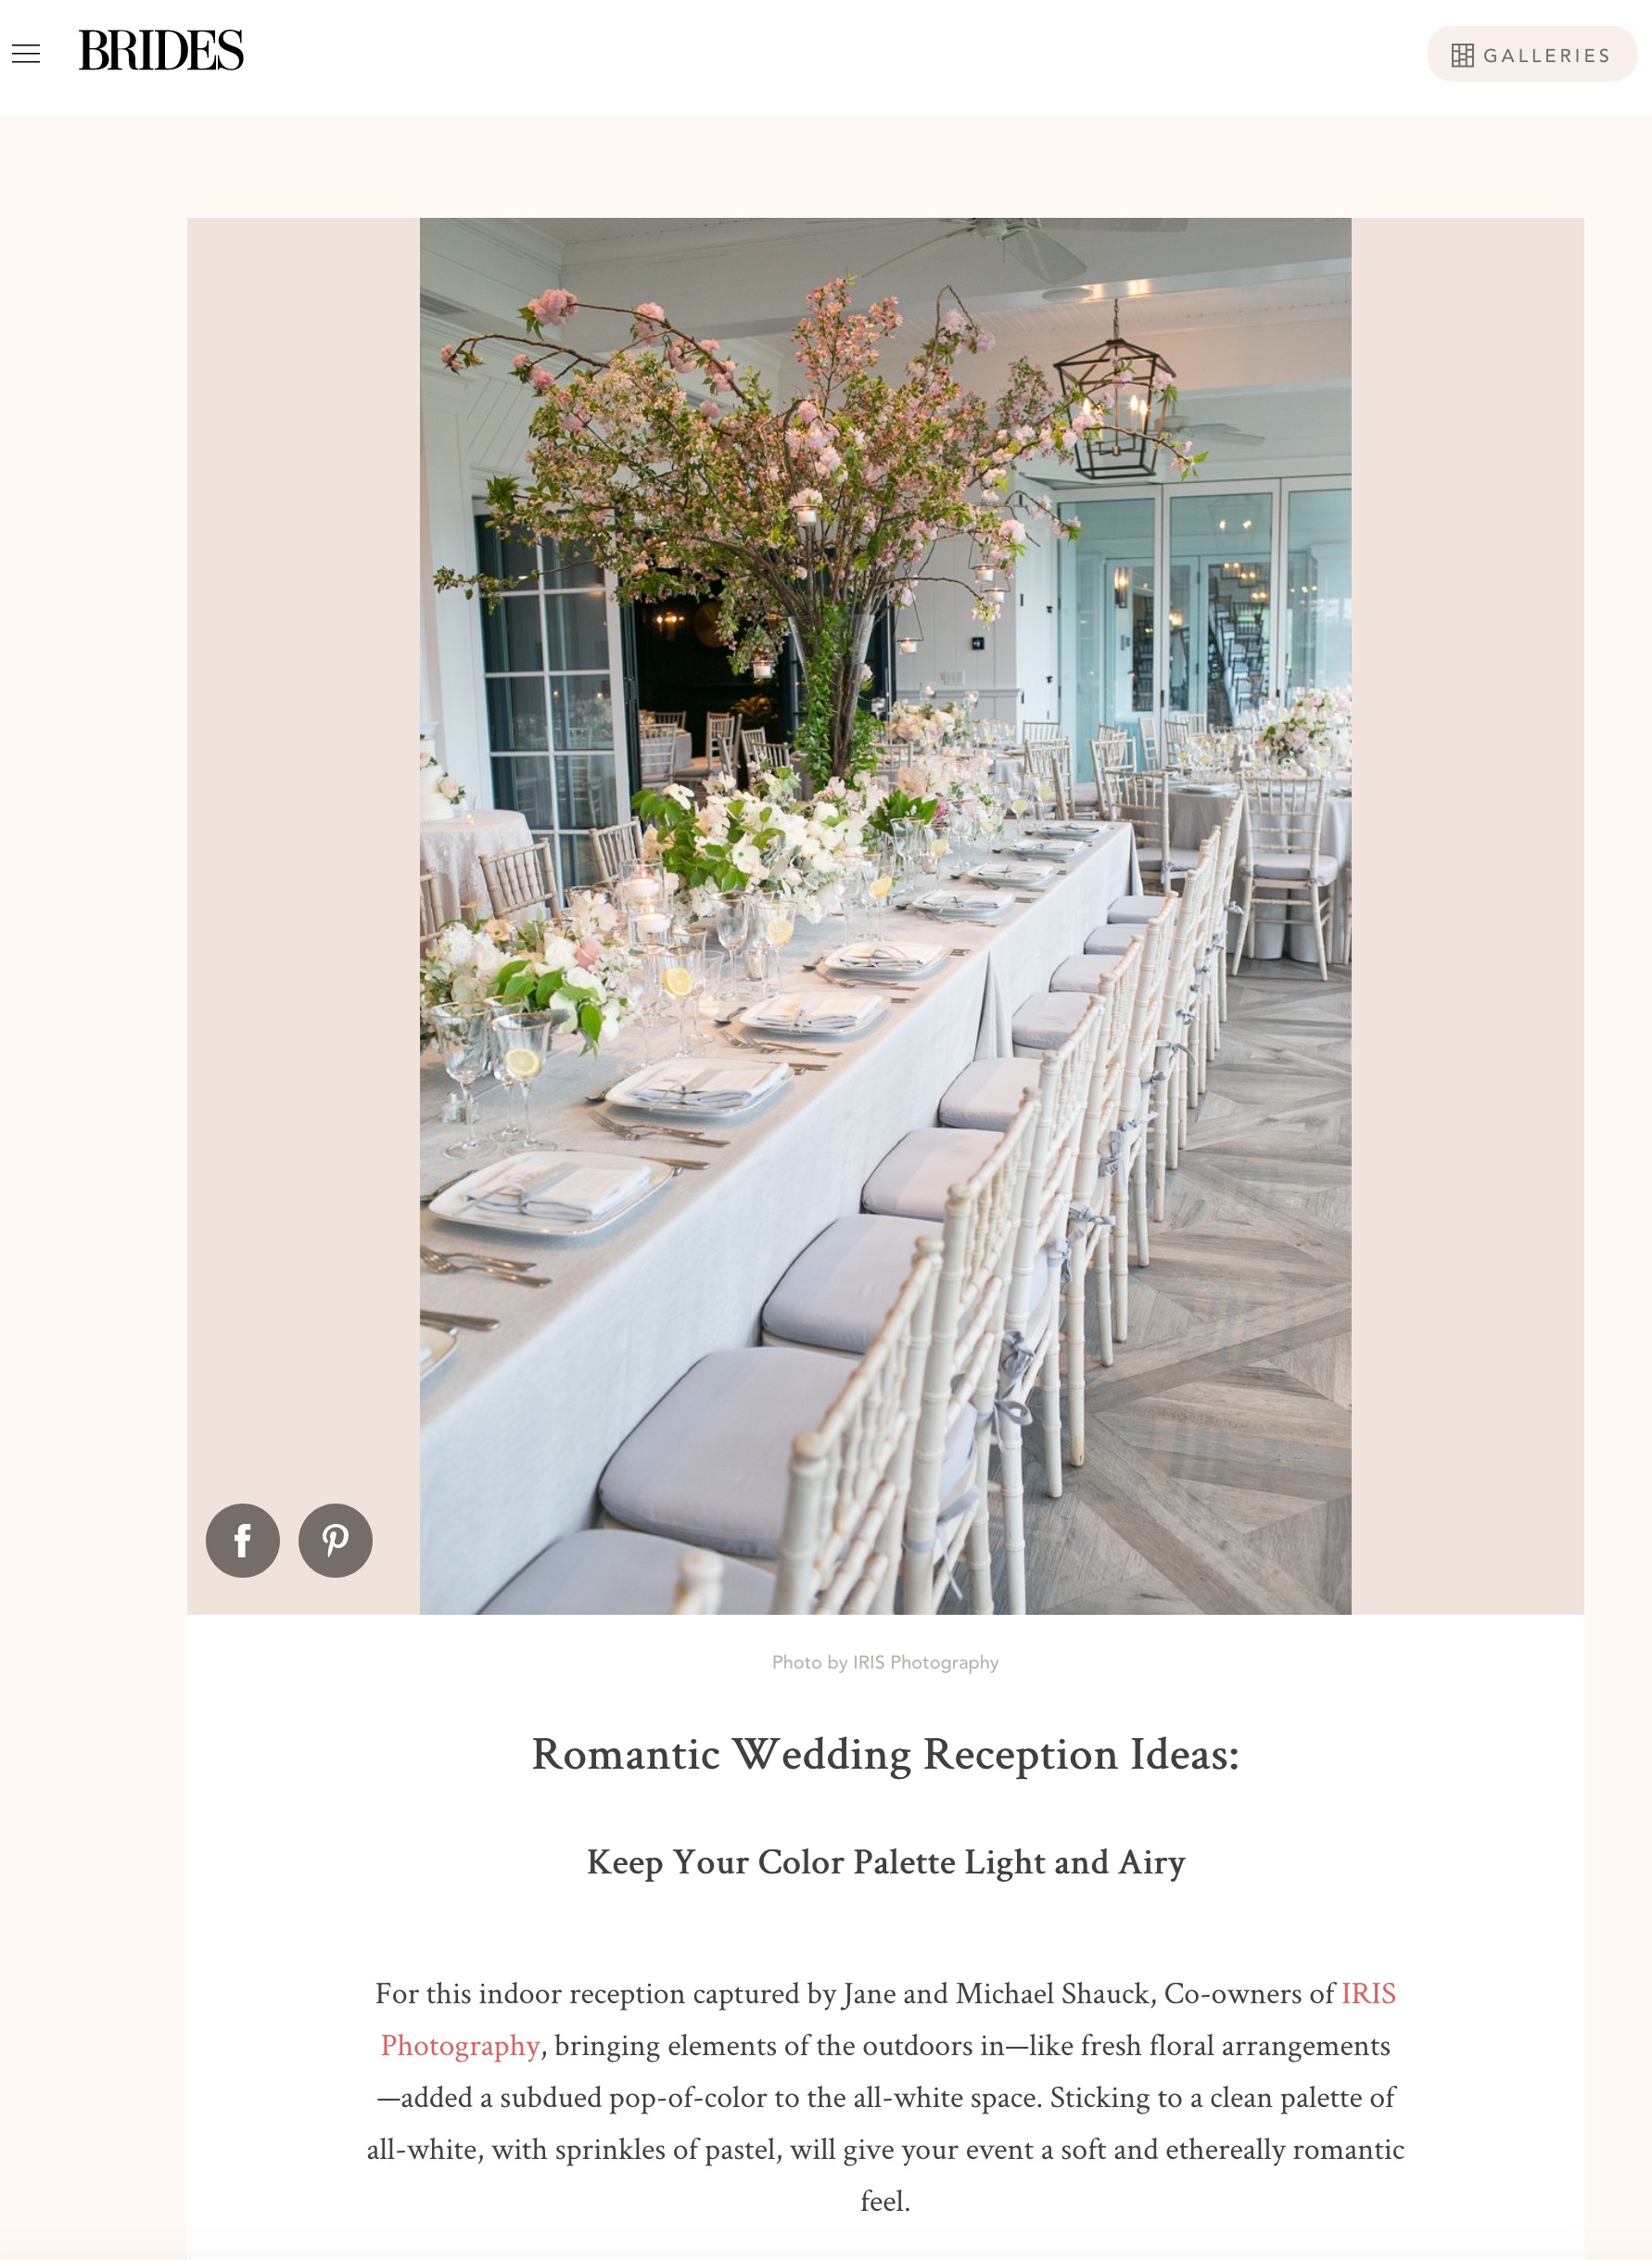 2019 brides romantic wedding reception article